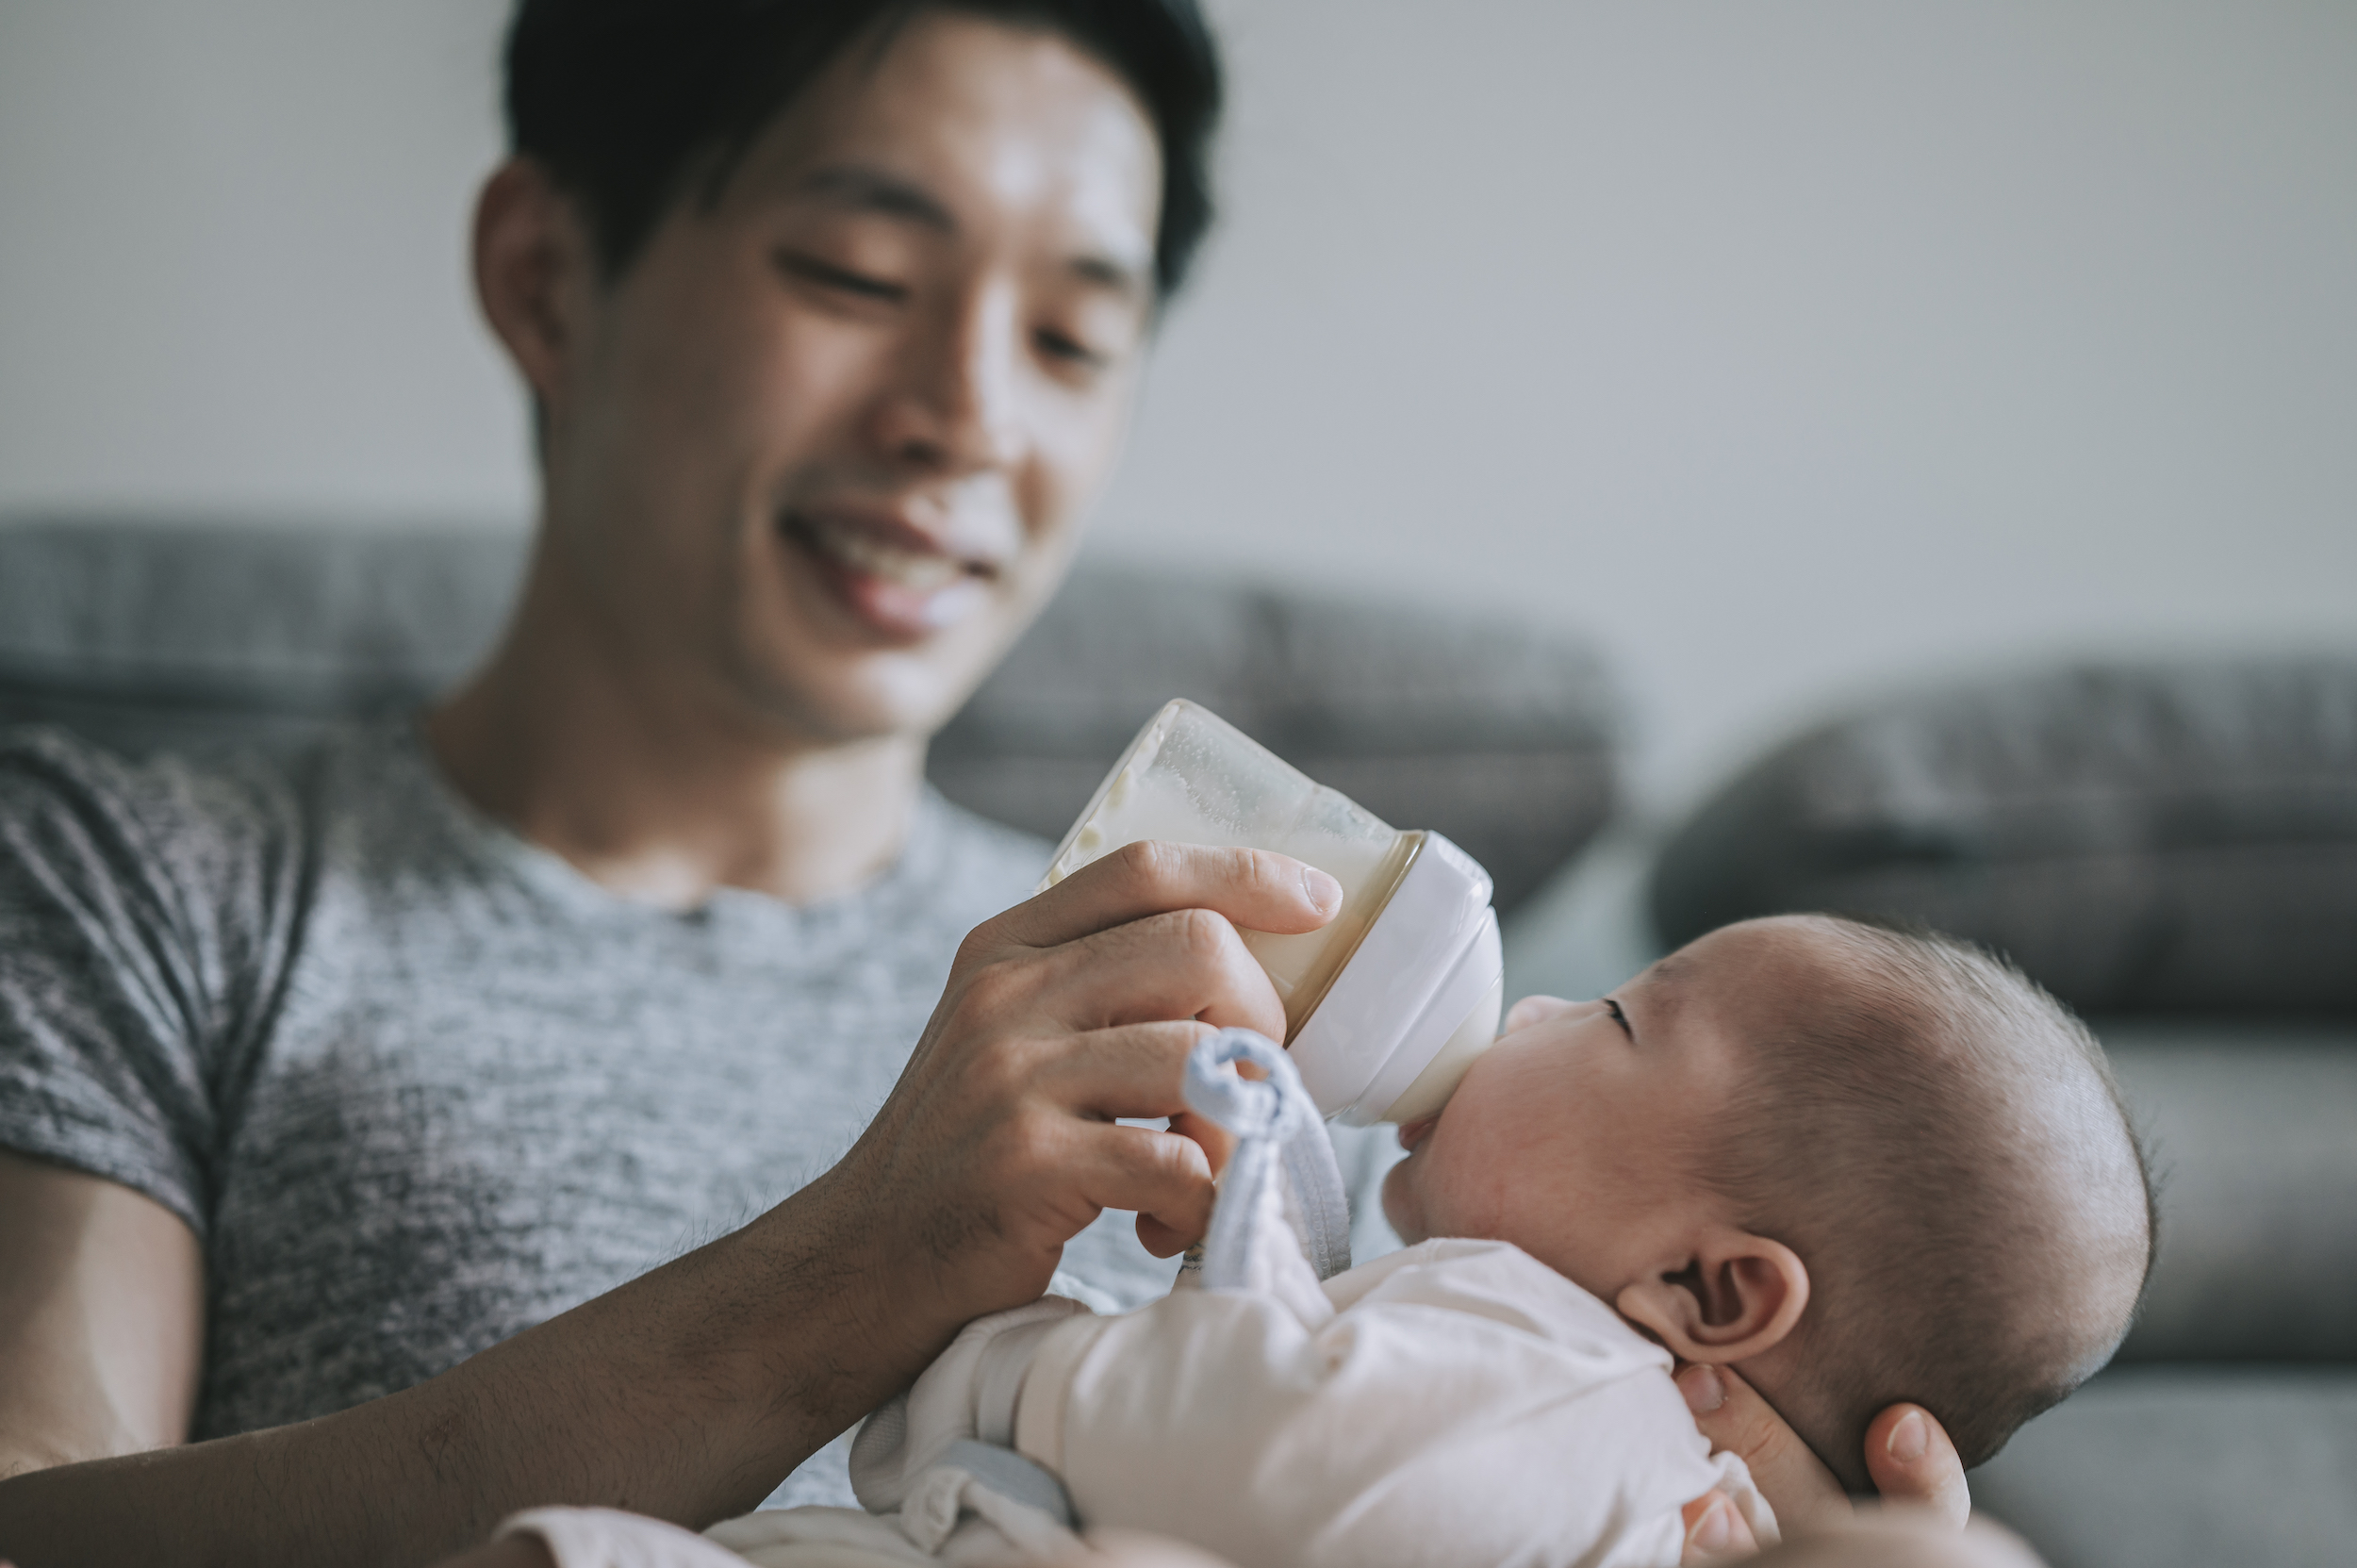 親餵寶寶和瓶餵寶寶，肚肚內都容易產生氣體，因此需要爸媽幫寶寶拍嗝，幫助寶寶順利打嗝，排出體內多餘的氣體。